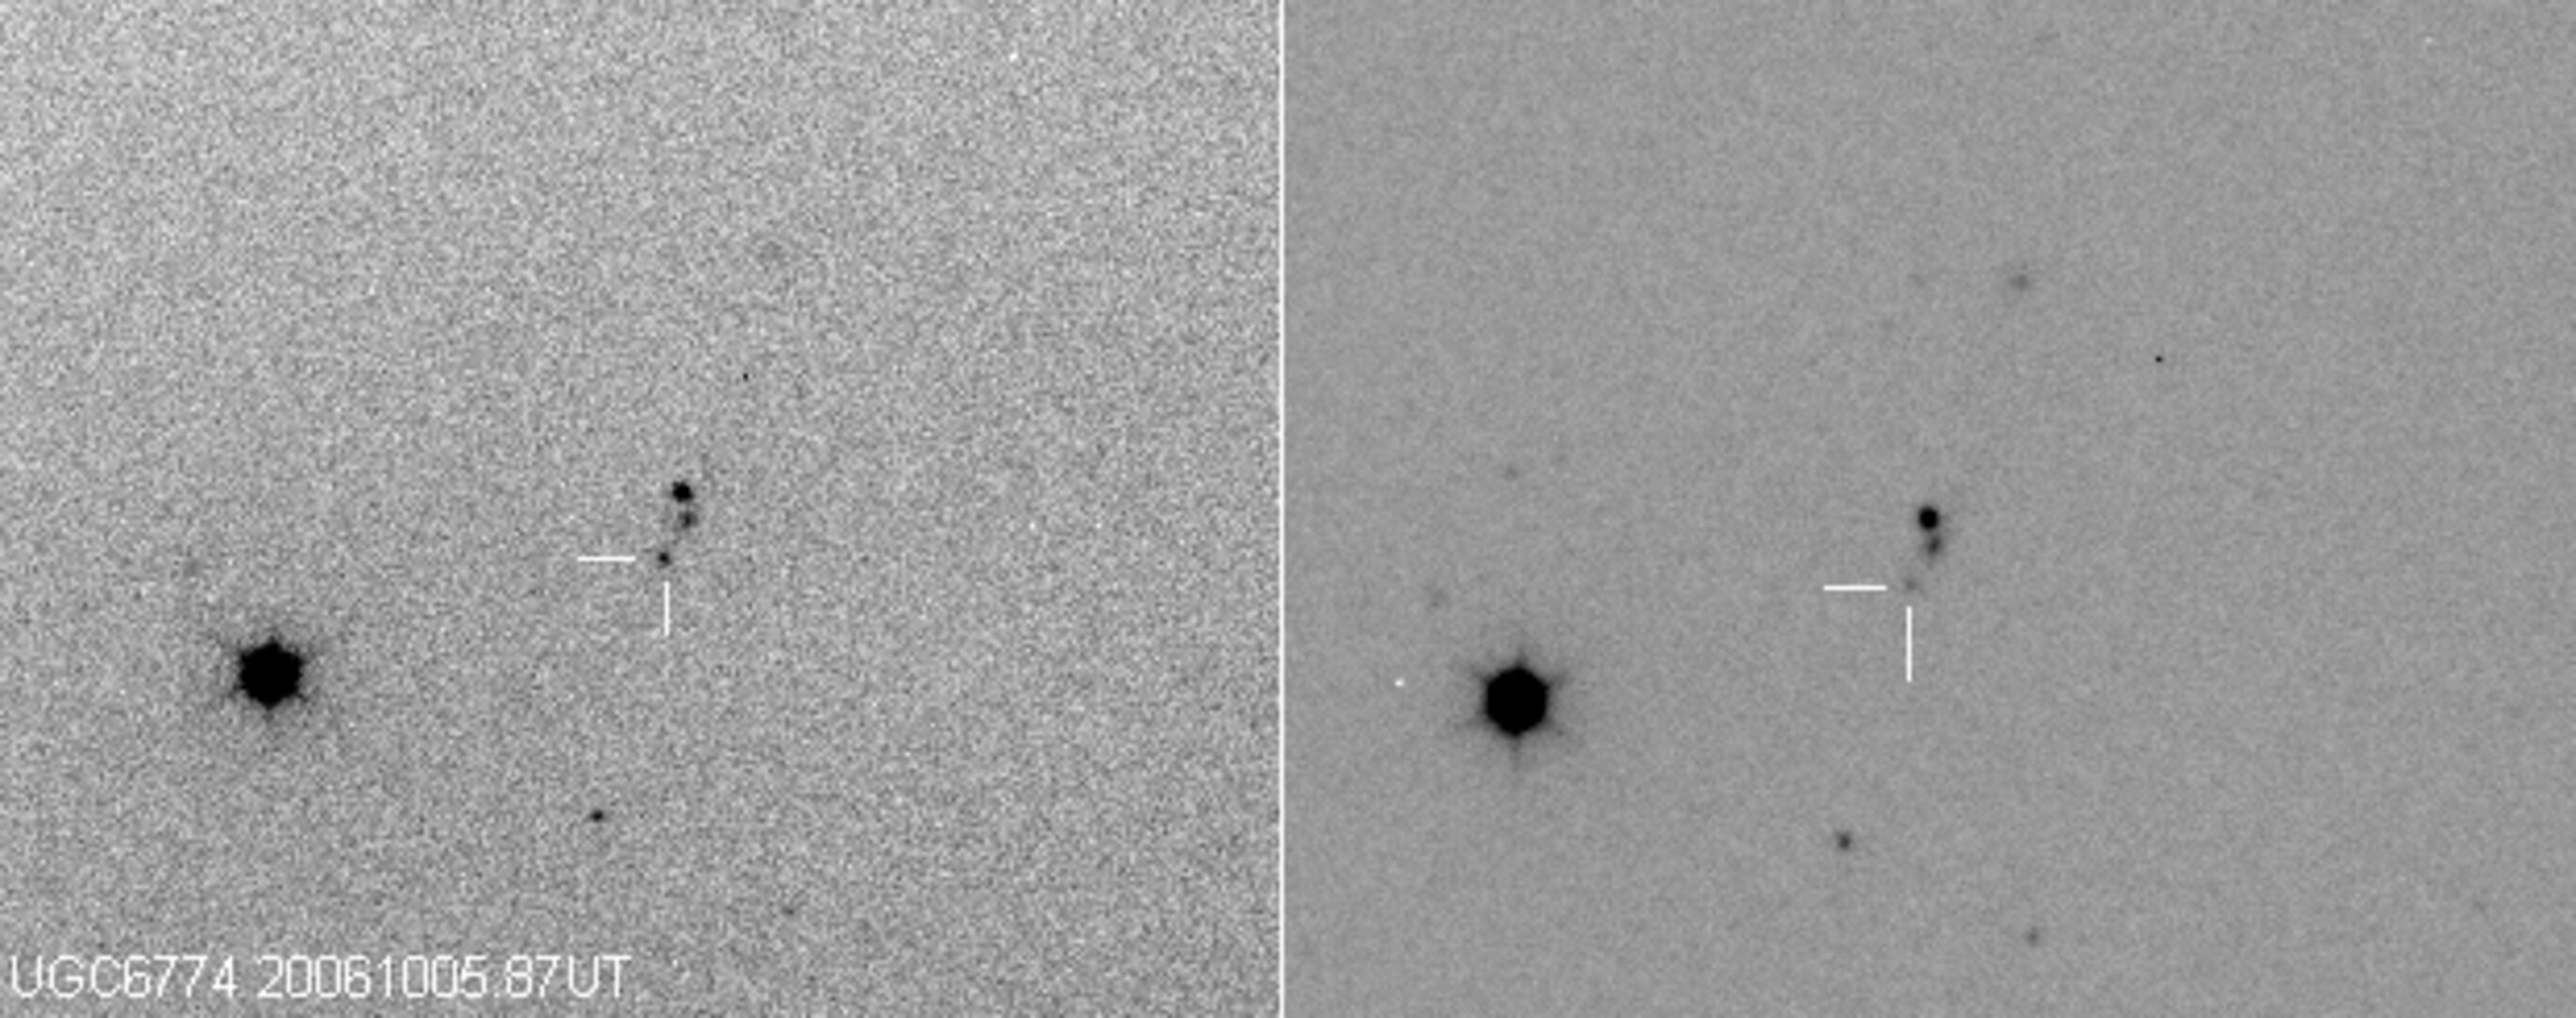 Det syns tydligt hur supernovan ökat i ljusstyrka på de knappa två veckor som gått mellan Gregors två fotografier